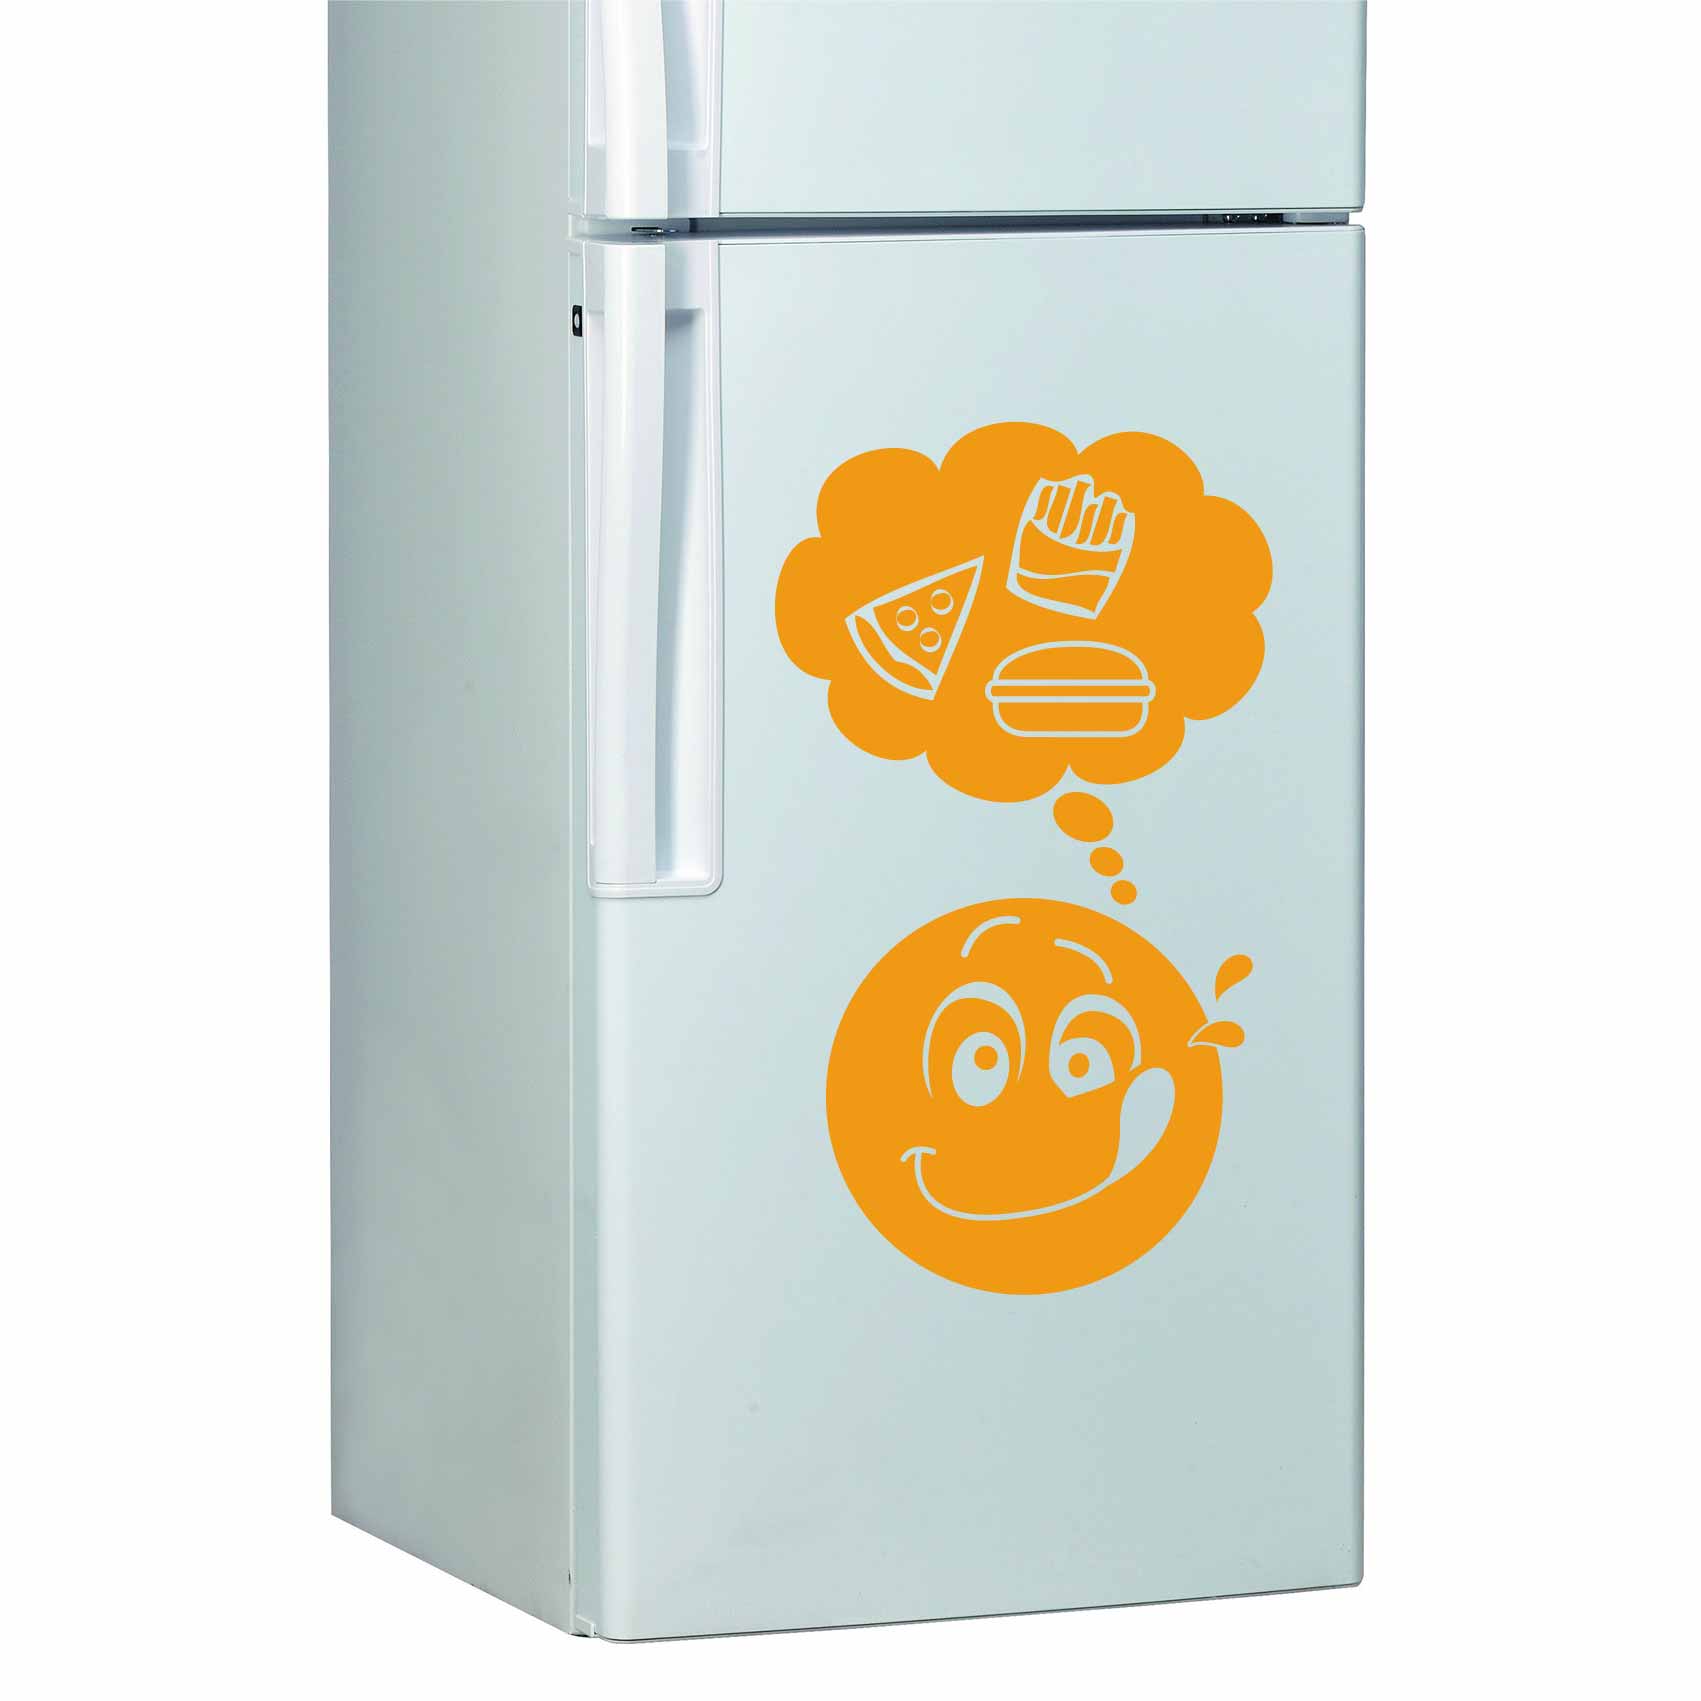 stickers-frigo-gourmand-ref6frigo-autocollant-refrigerateur-stickers-pour-frigo-cuisine-frigidaire-combiné-congelateur-americain-decoration